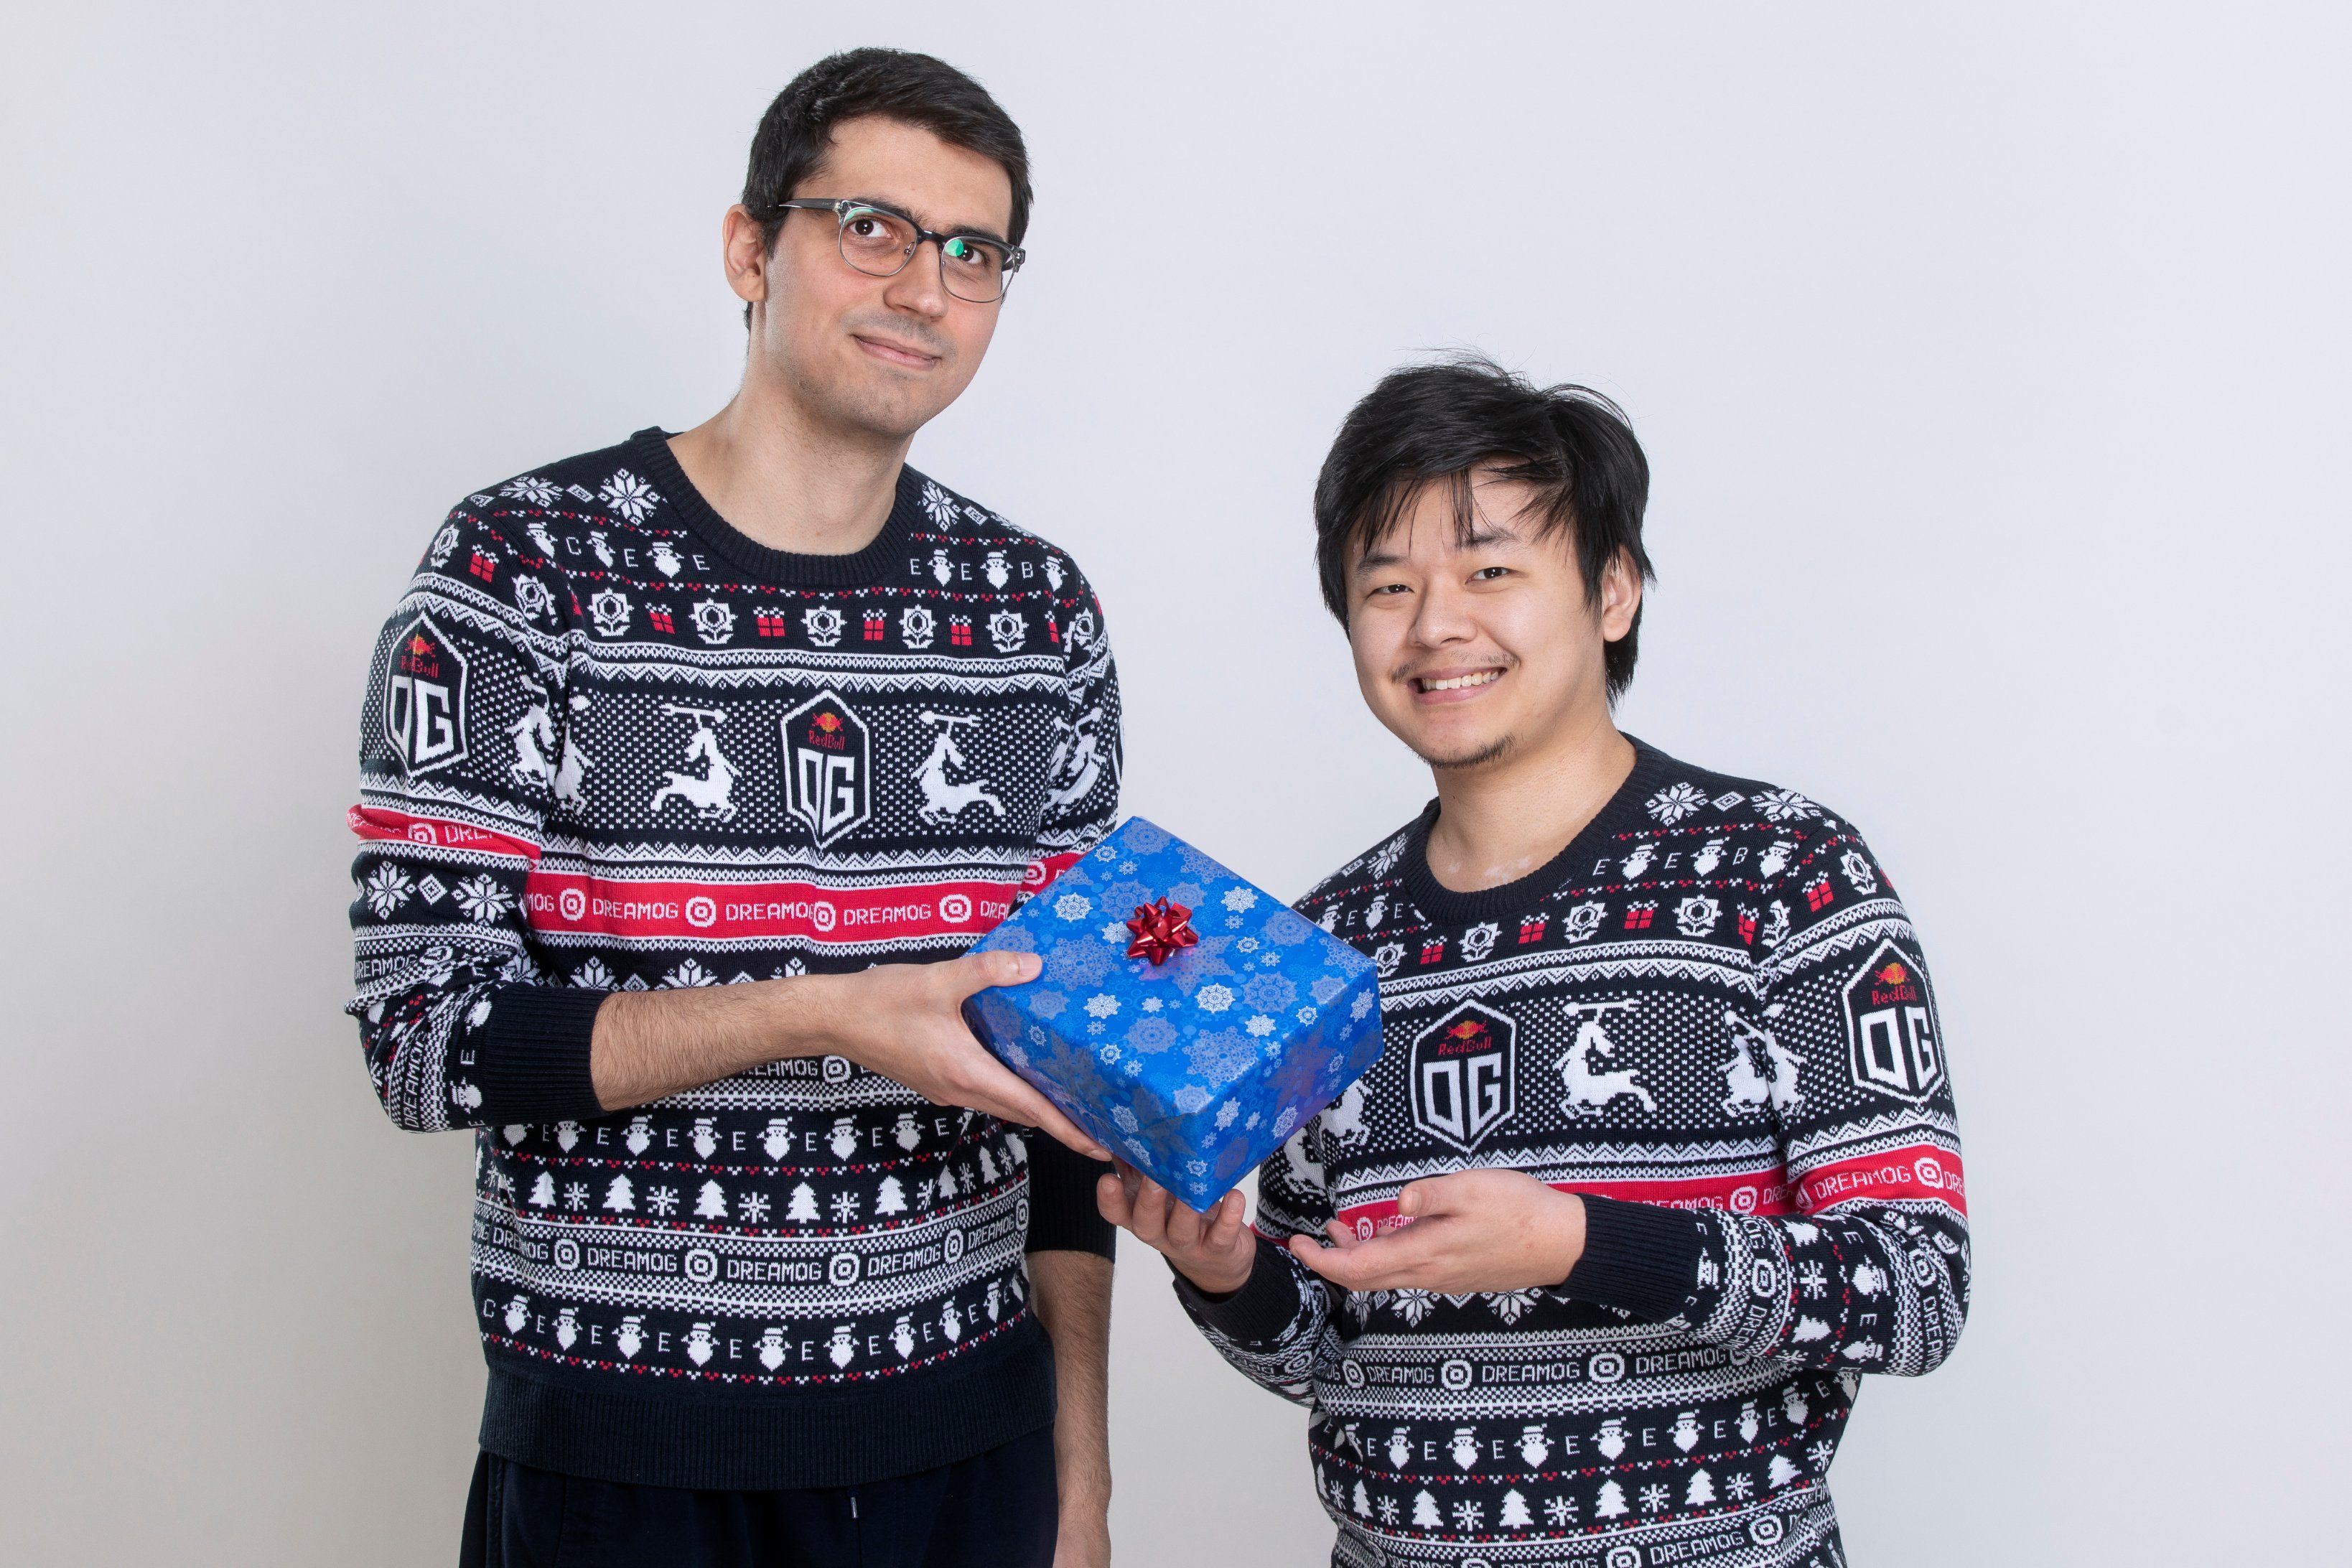 Saksa и MidOne в рождественских свитерах OG.
Источник: OG